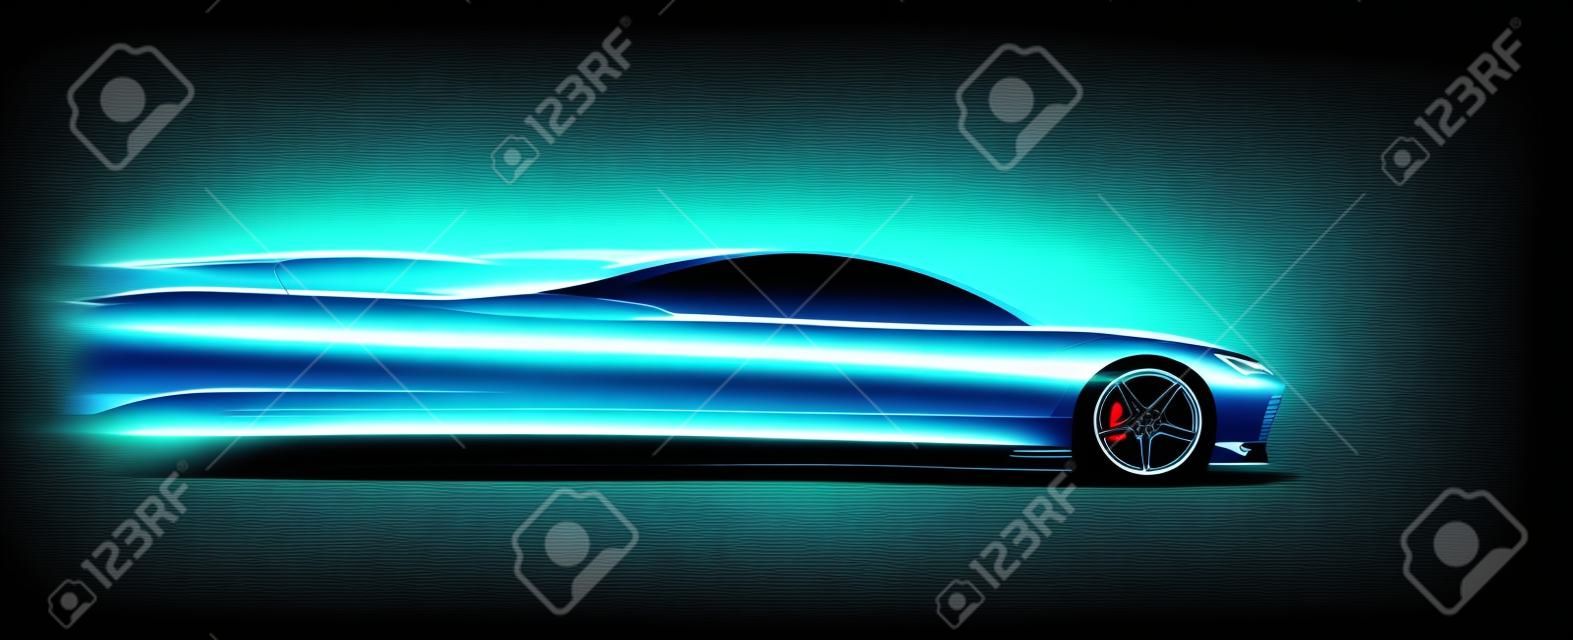 Vista lateral neon brilhante silhueta de carro esporte. Abstrato moderno estilo vector eps 10 ilustração.